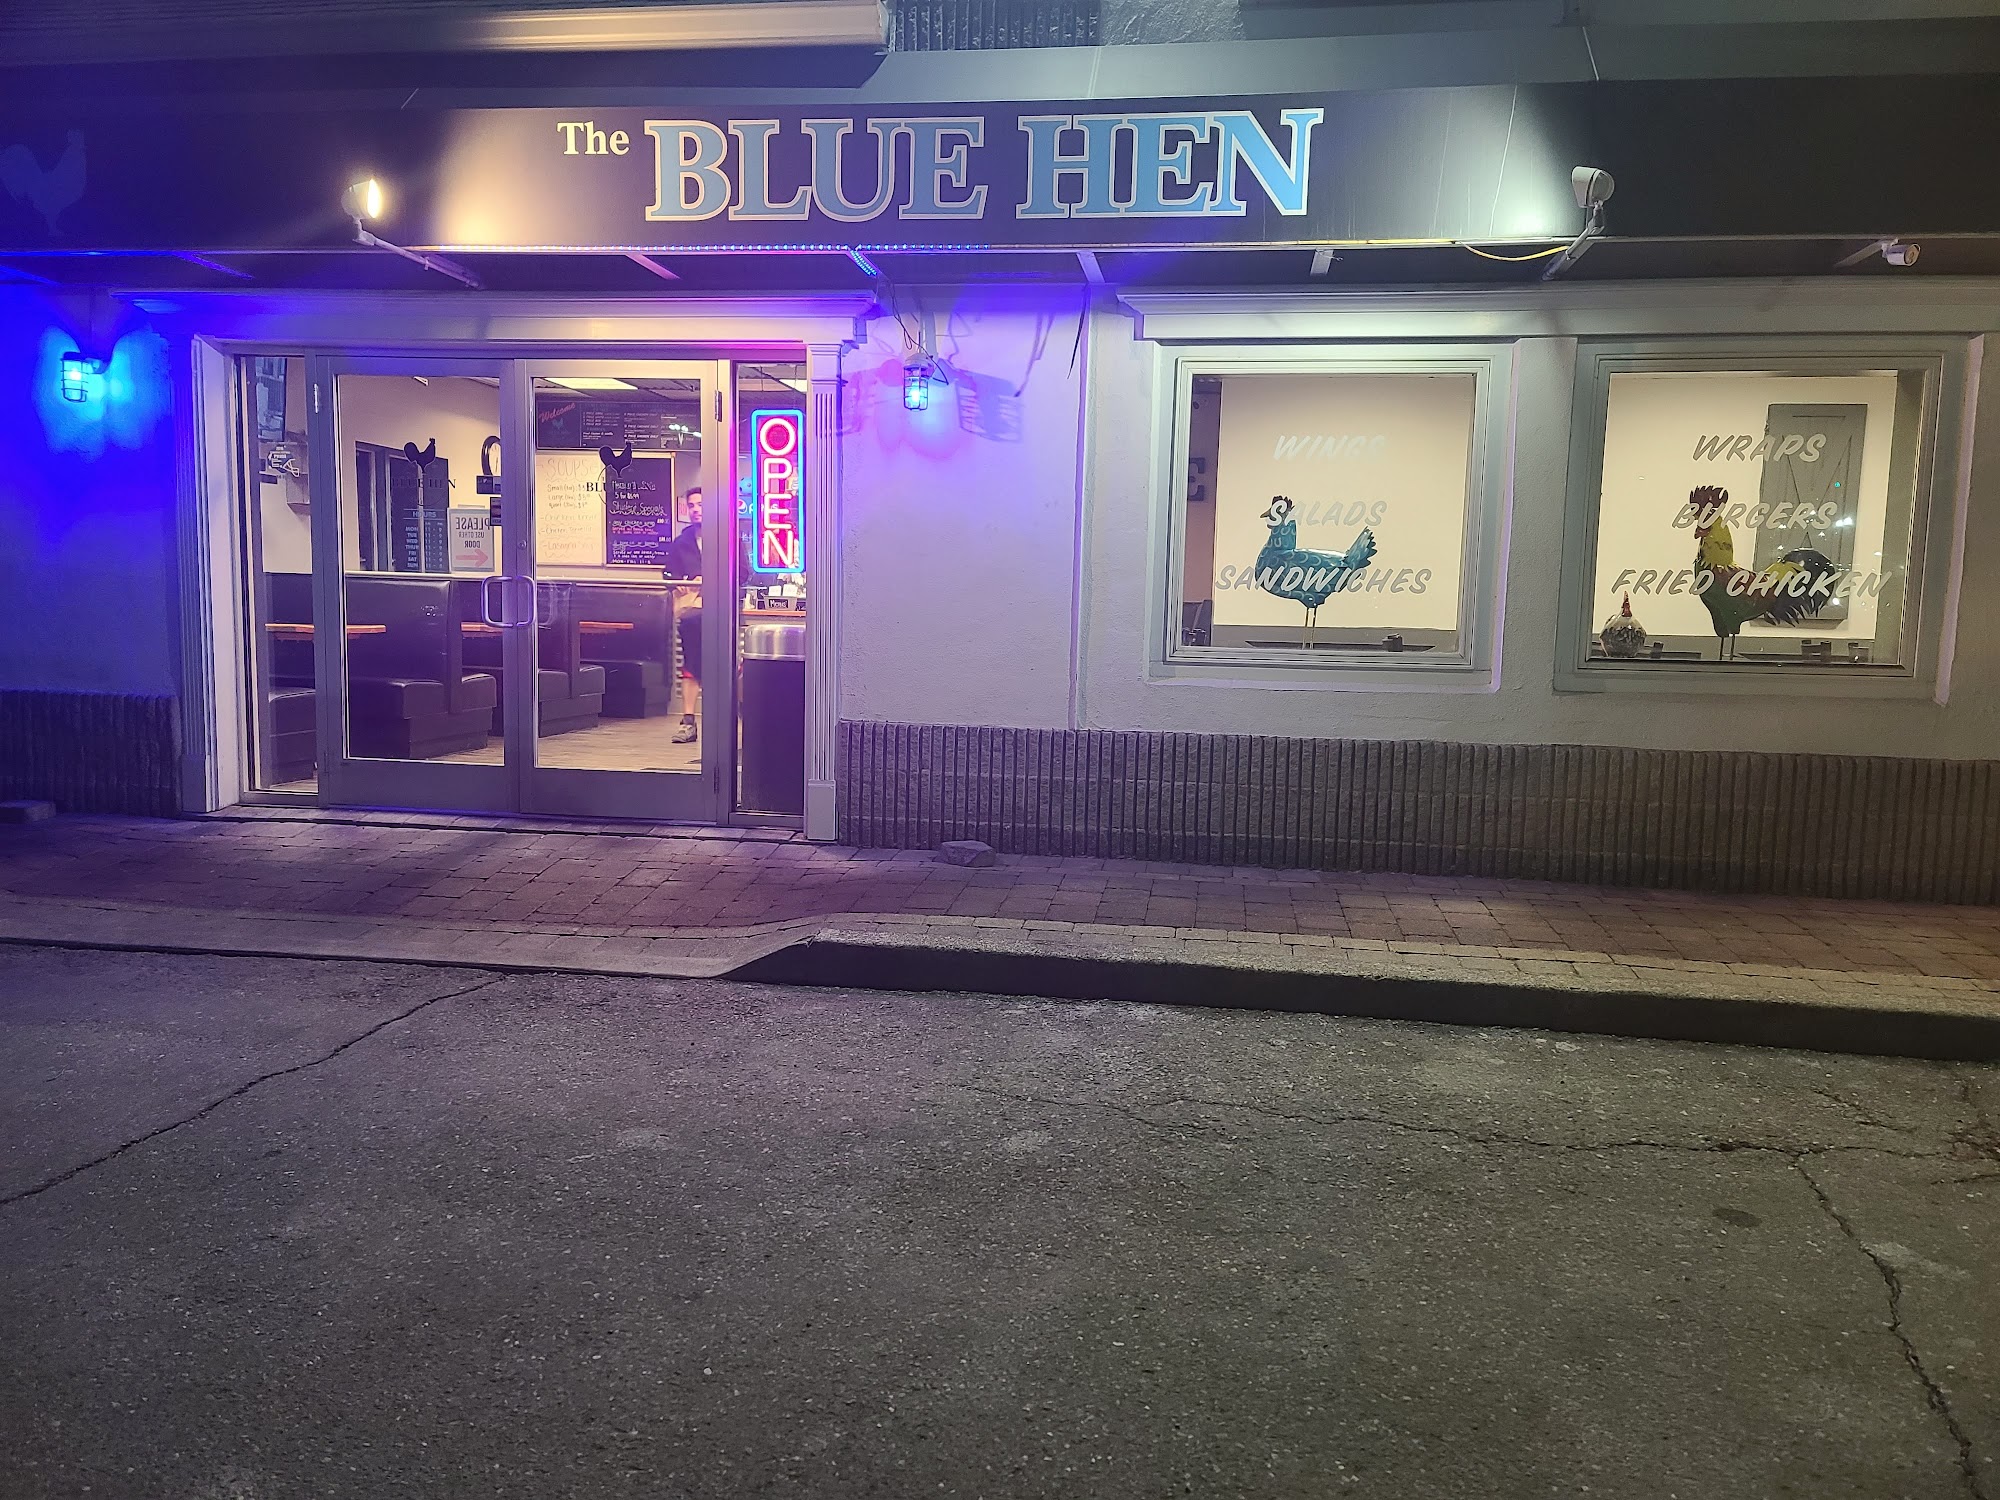 The Blue Hen